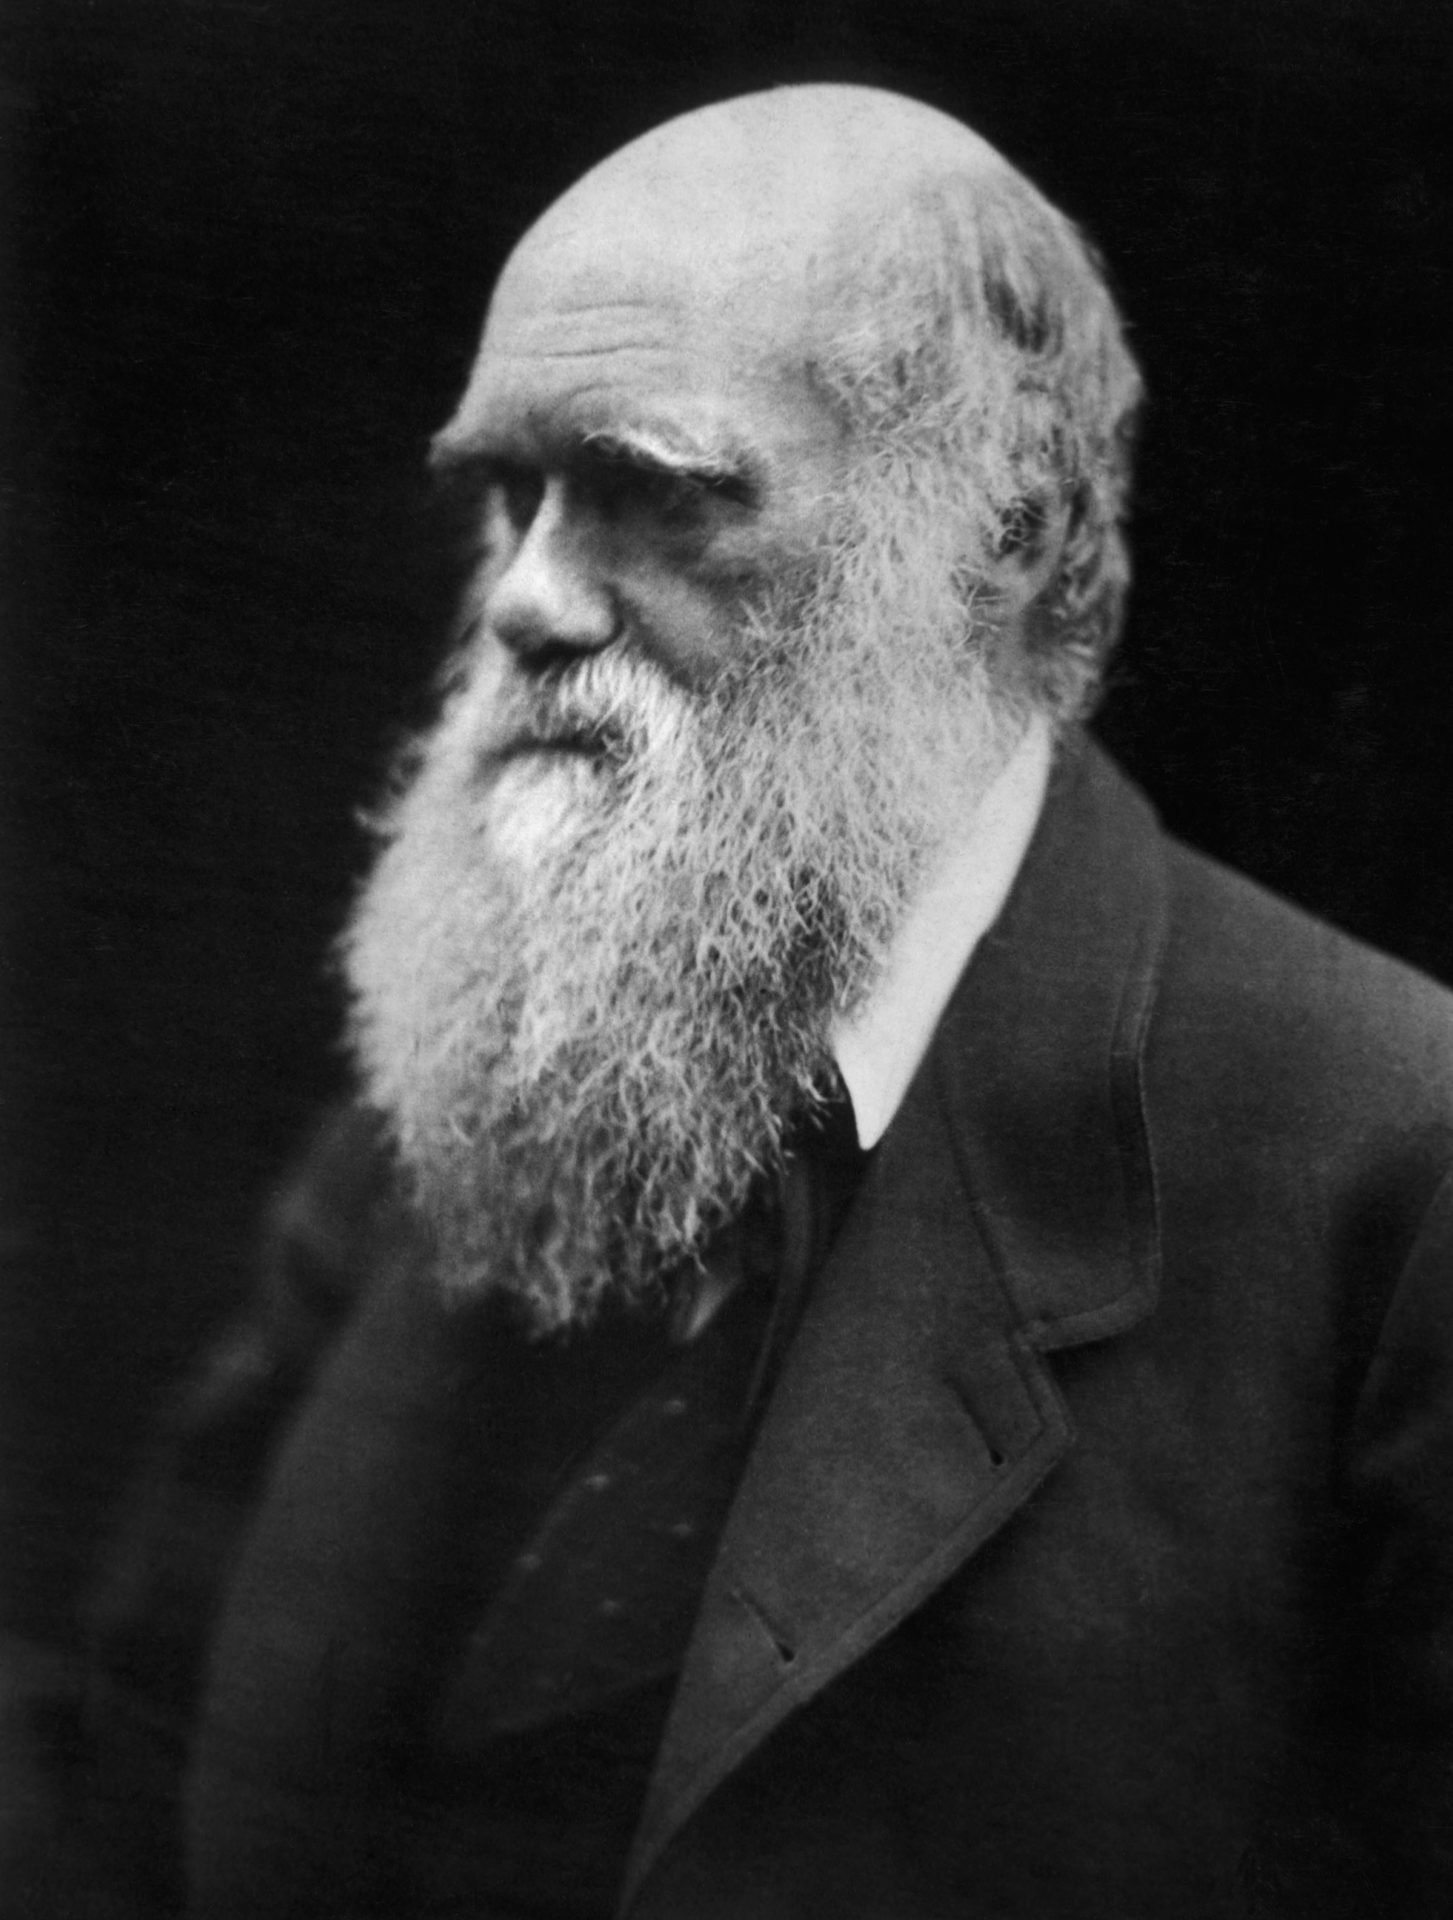 چارلز رابرت داروین |Charles Robert Darwin | تاریخچه بیوتکنولوژی | تاریخچه زیست فناوری | مقاله بیوتکنولوژی و تاریخچه آن | سعید کارگر